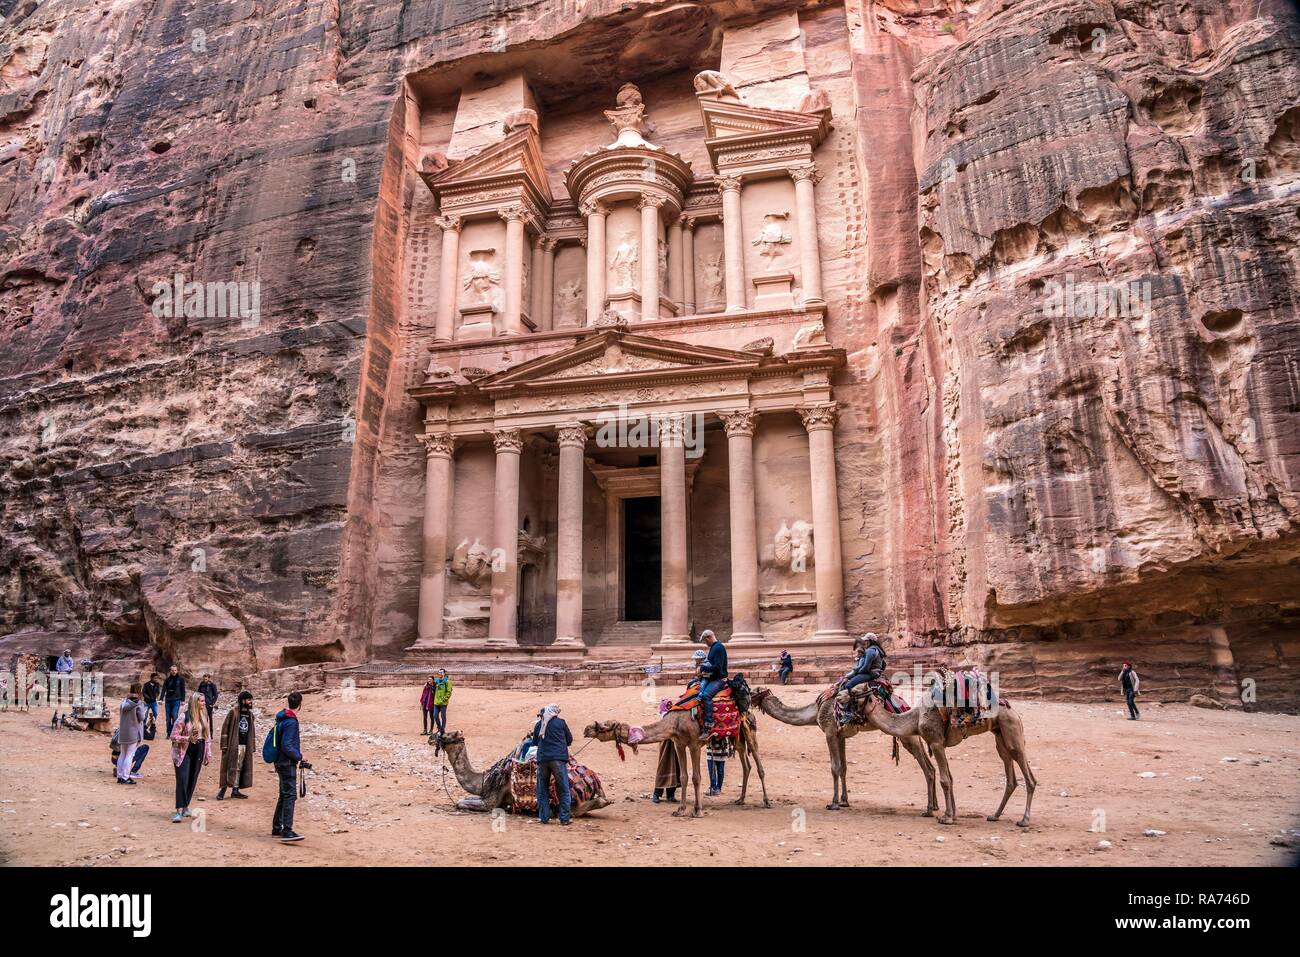 Los camellos delante de la casa del tesoro del faraón Khazne al-Firaun, Petra, Jordania Foto de stock